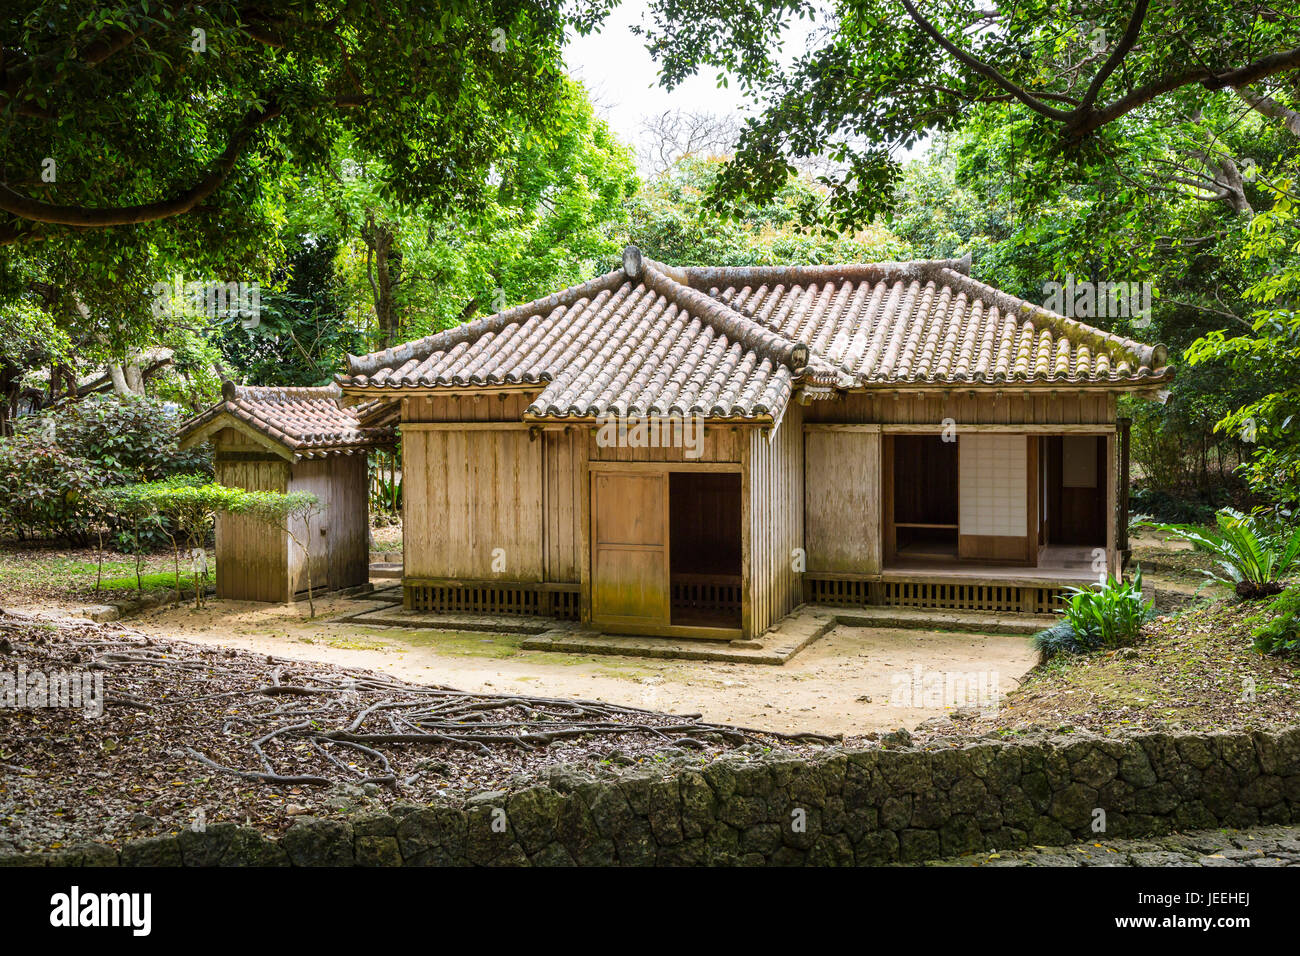 Los jardines de Shikinaen, una antigua residencia Real están situados en una pequeña colina al sur del Castillo de Shuri en Naha, Okinawa, Japón. Foto de stock